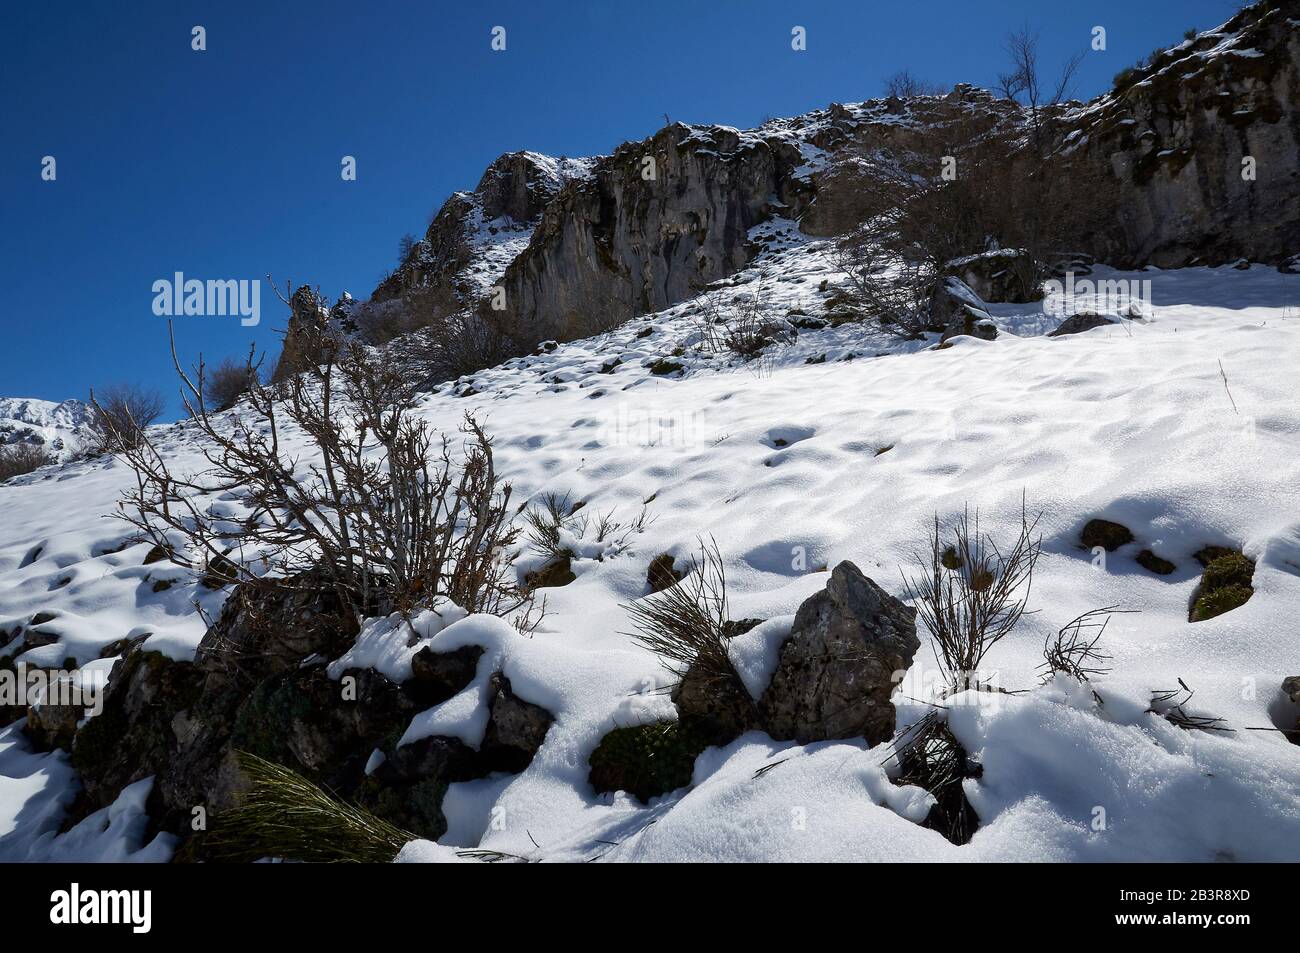 Paisaje nevado invernal con flora cubierta de nieve virgen en un día soleado en PR.AS-15 caminata (Valle del Lago, Parque Natural de Somiedo, Asturias, España) Foto de stock